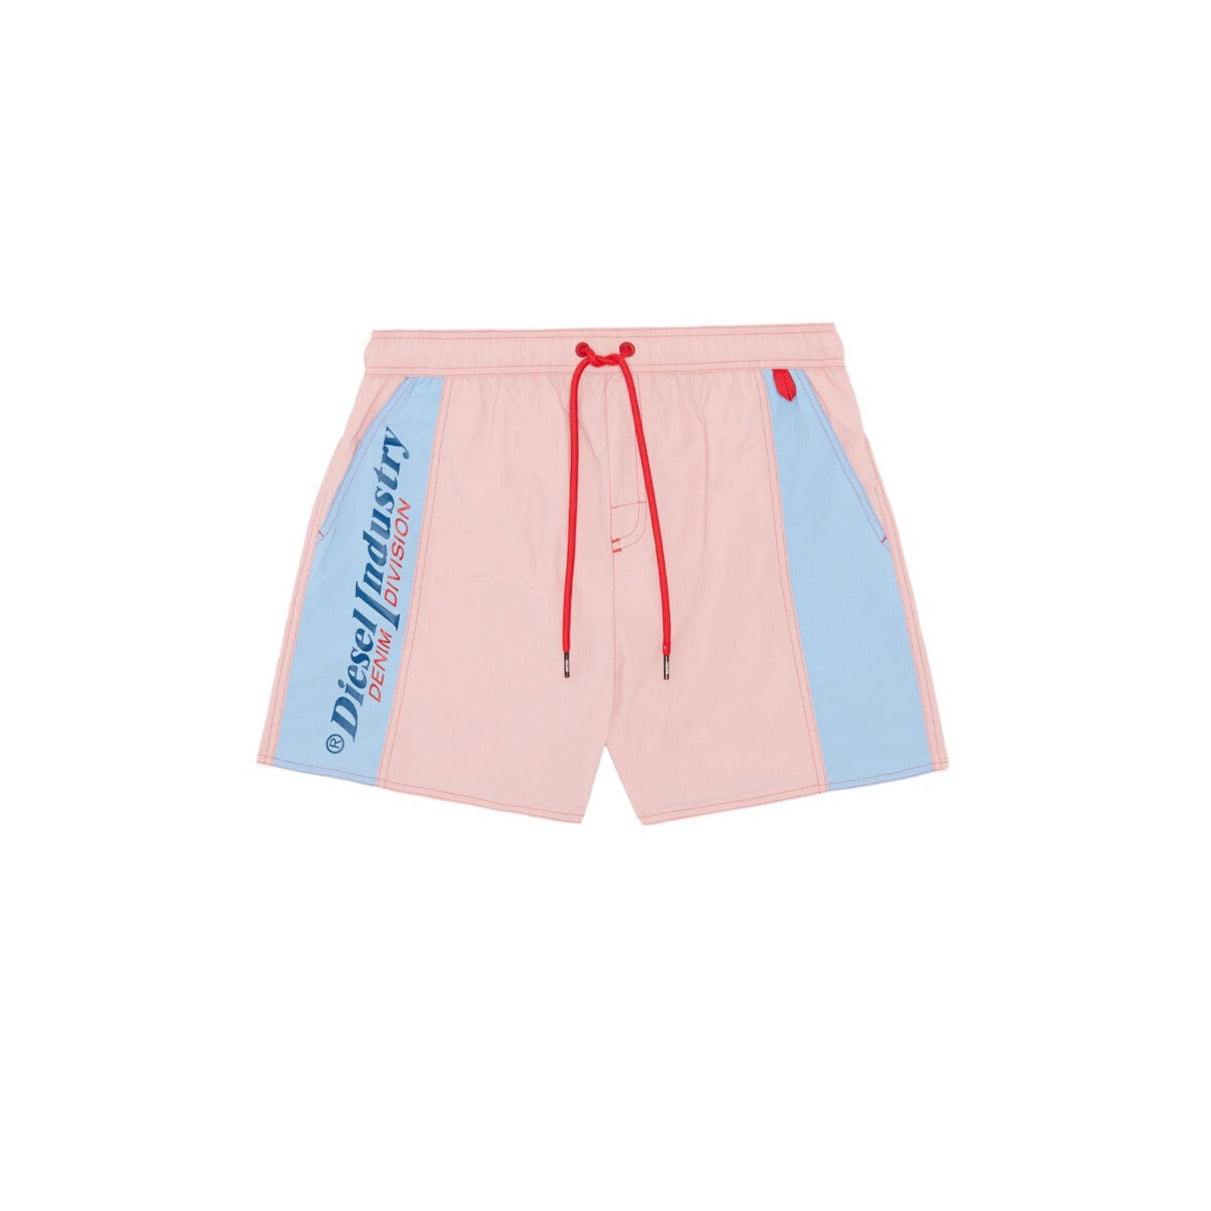 Diesel Men’s bmbx Caybay Short Swim Trunks Pink